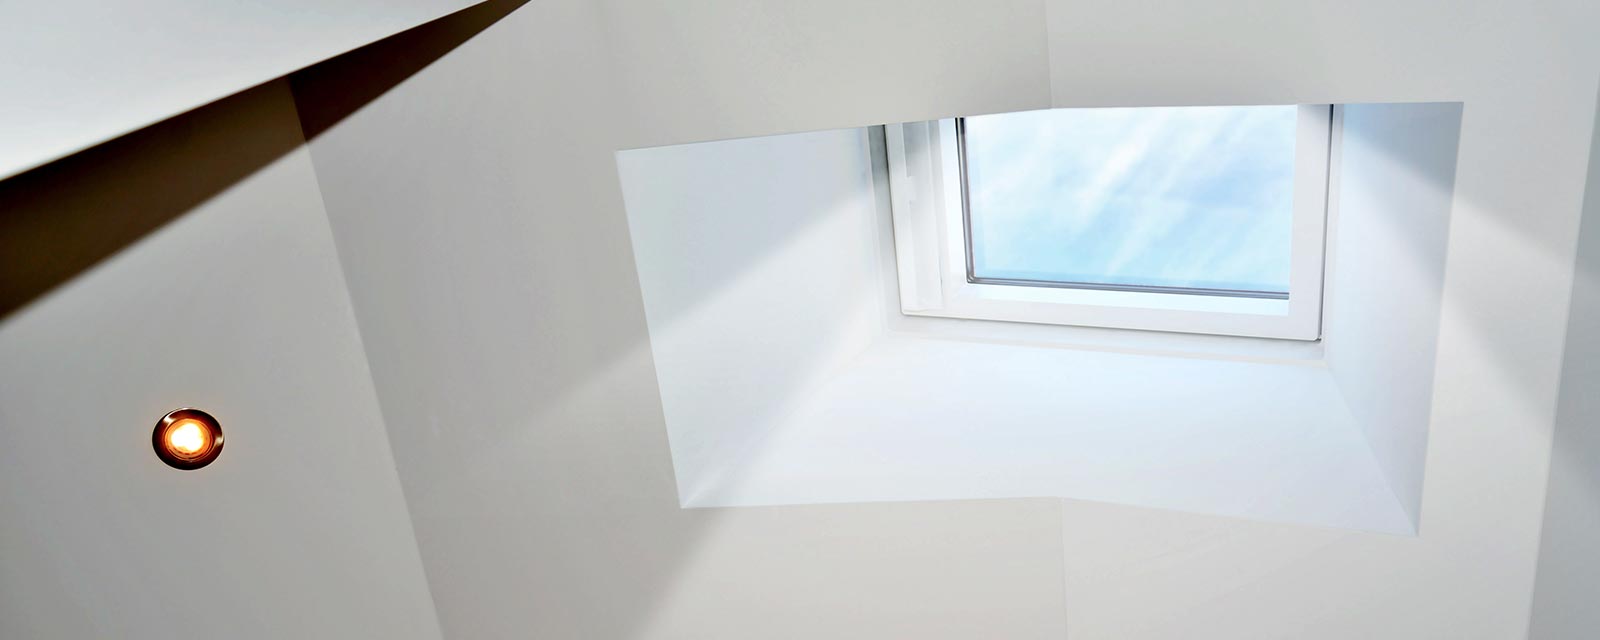 Fenêtre de toit plat à ouverture manuelle